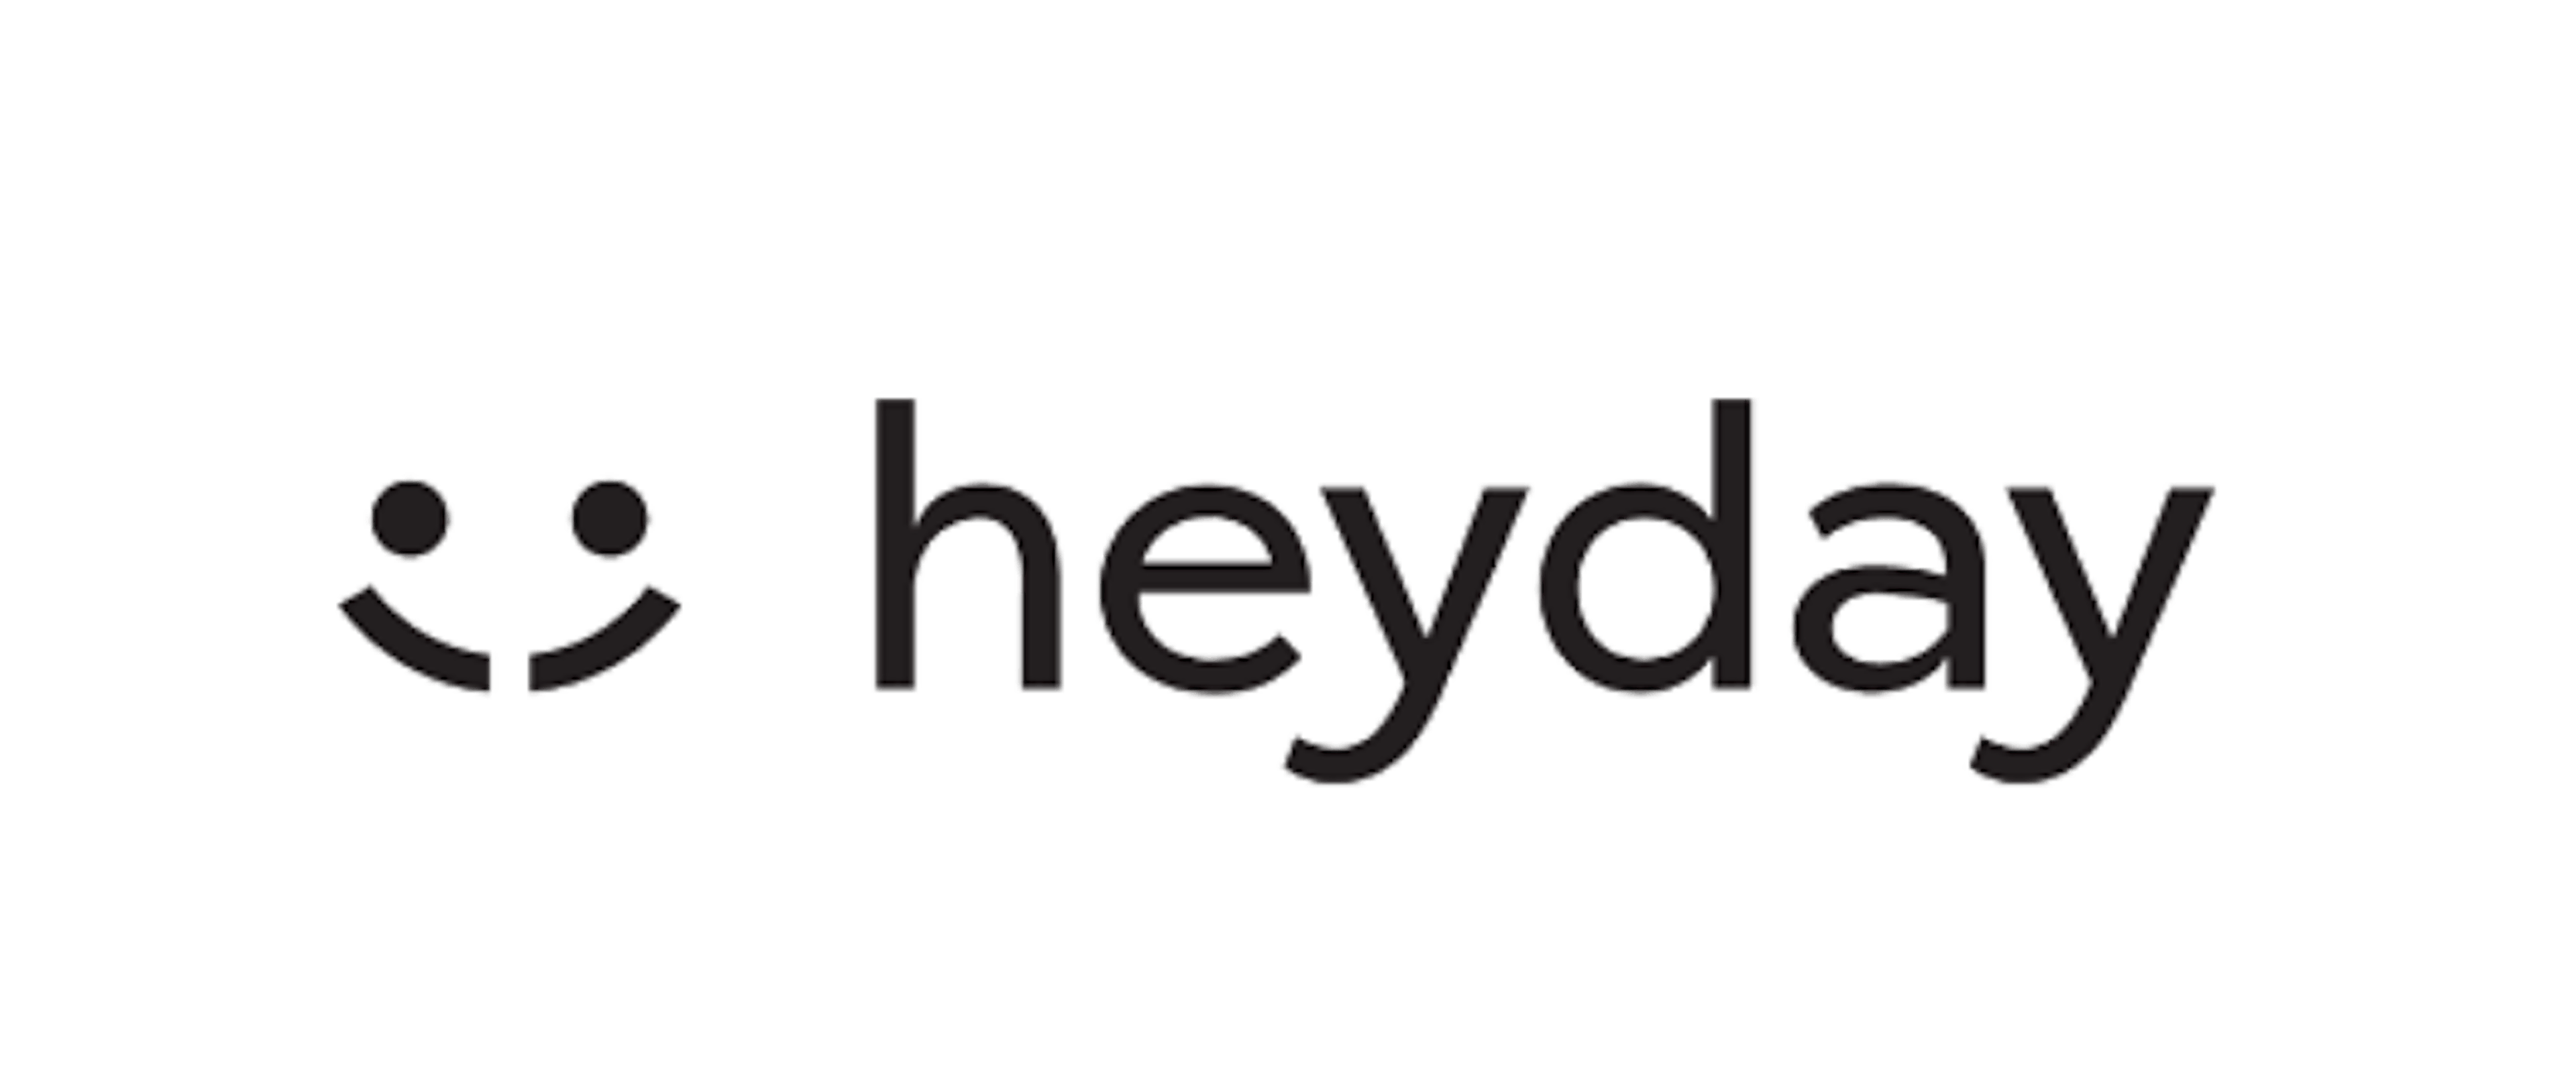 Logo heyday